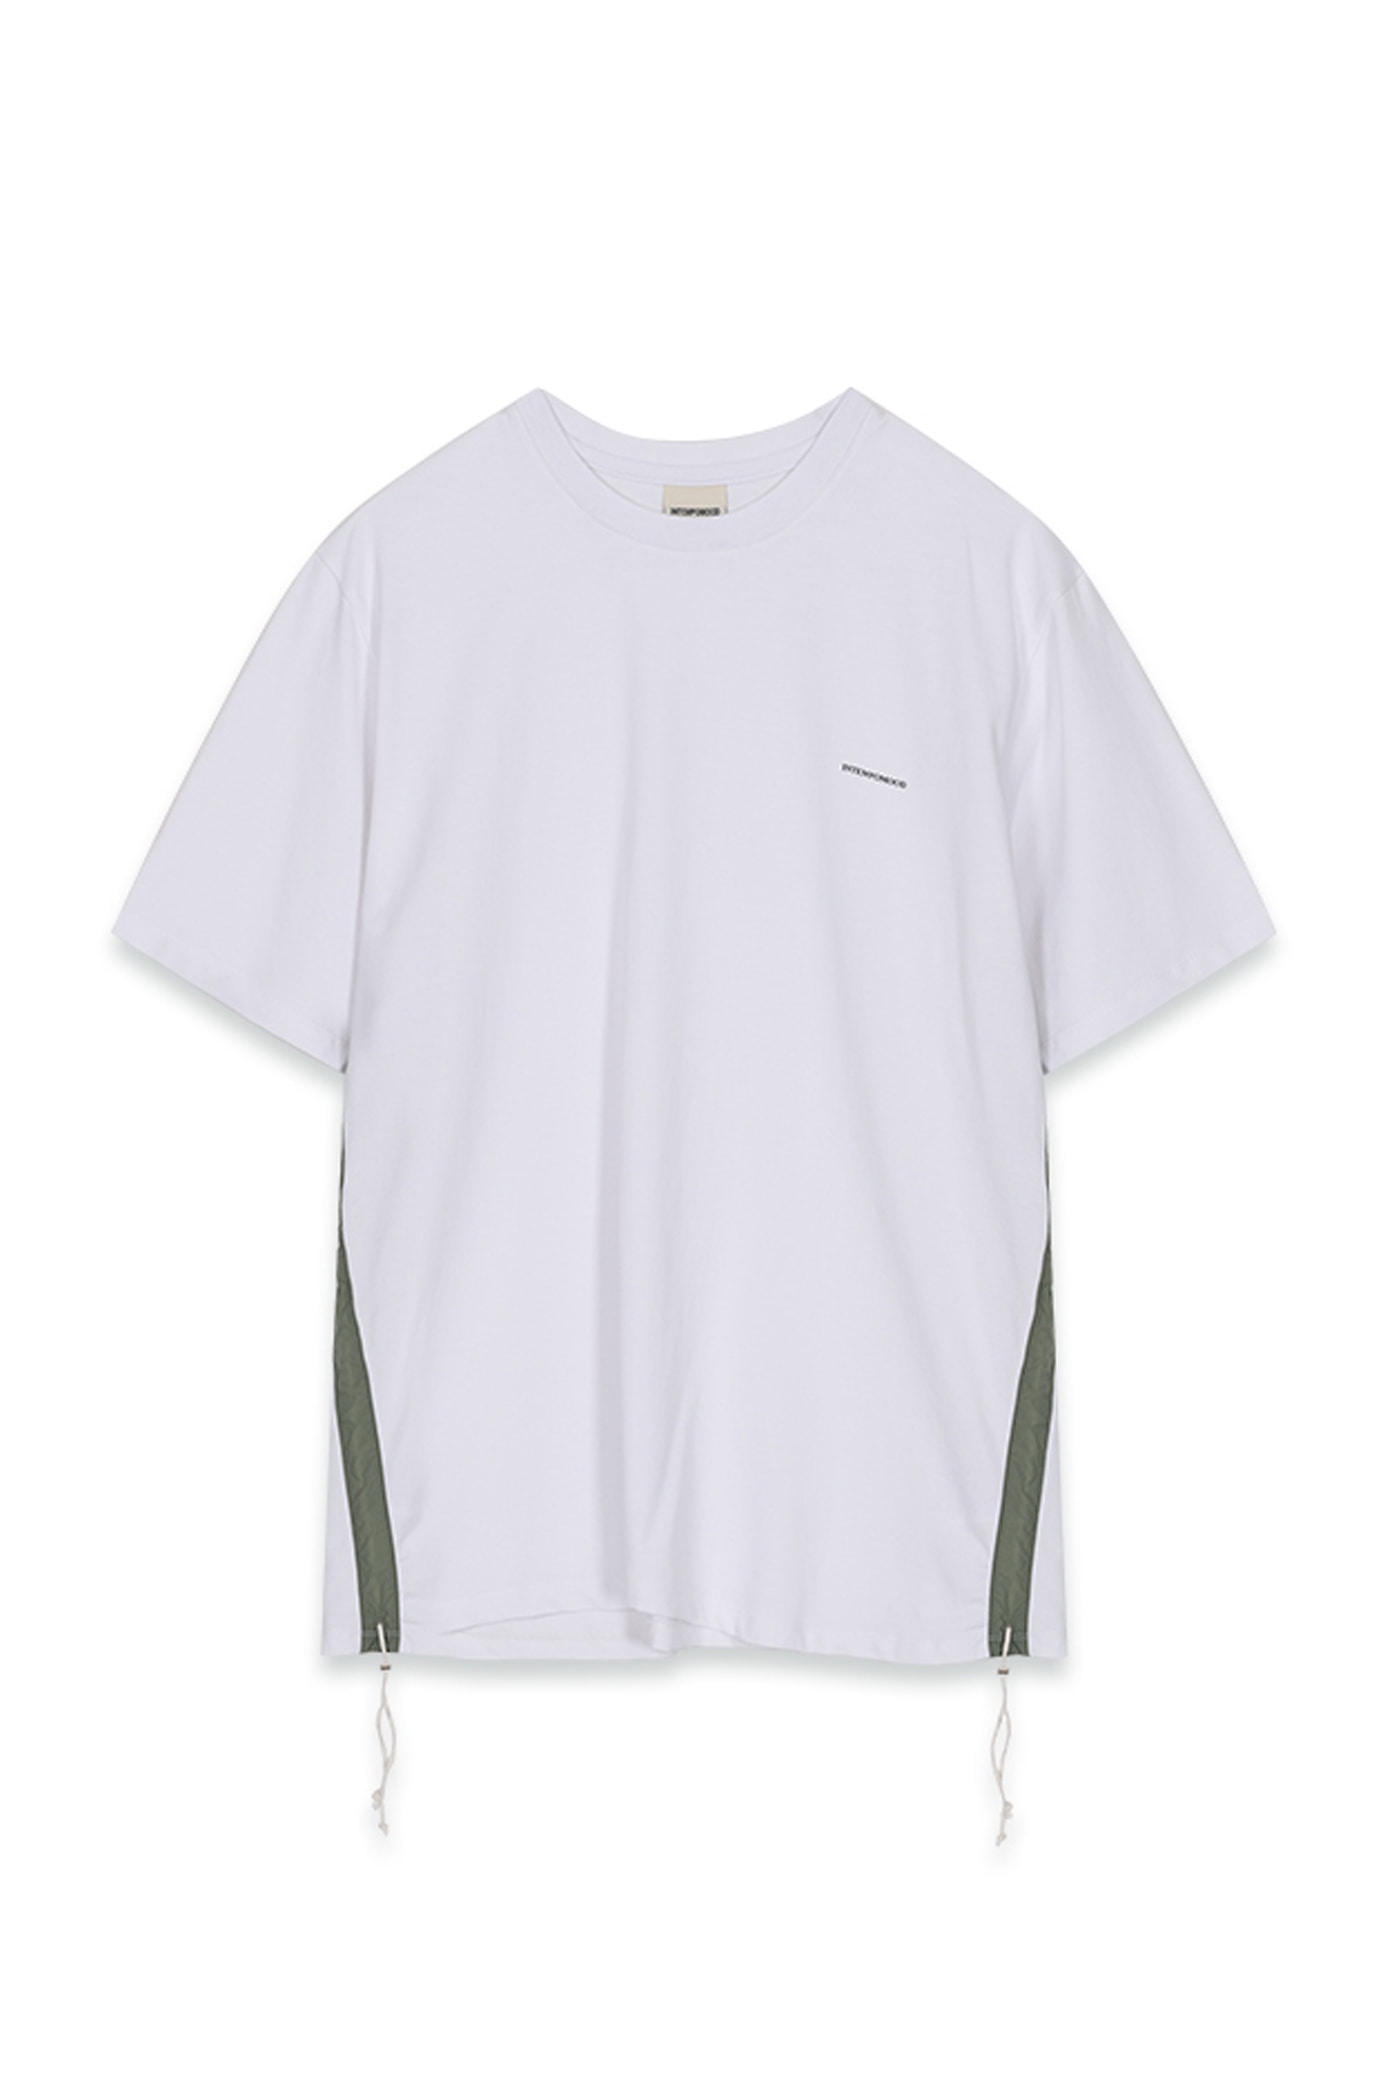 ● 80%) Sisal Twine Shirring Detail T-shirts_White